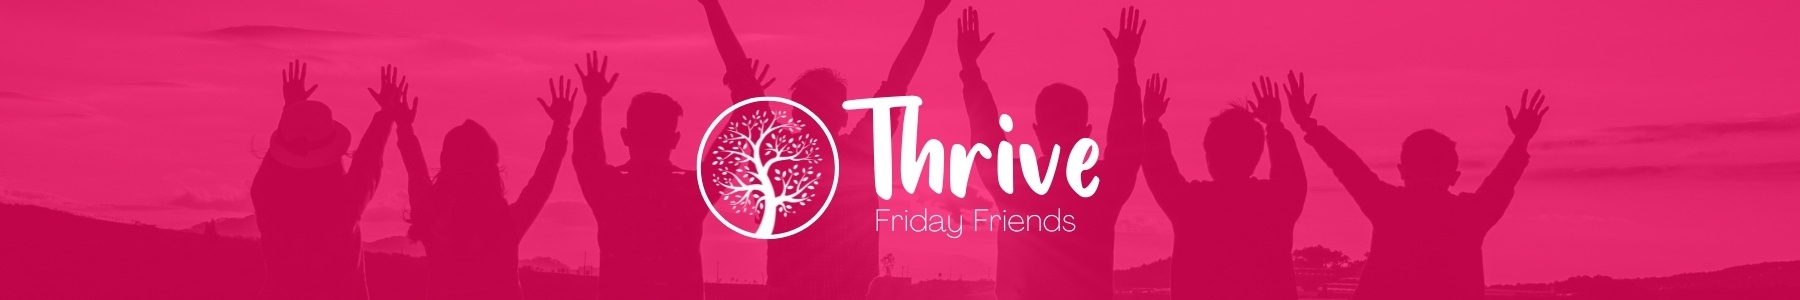 Thrive_fridayfriends_banner2